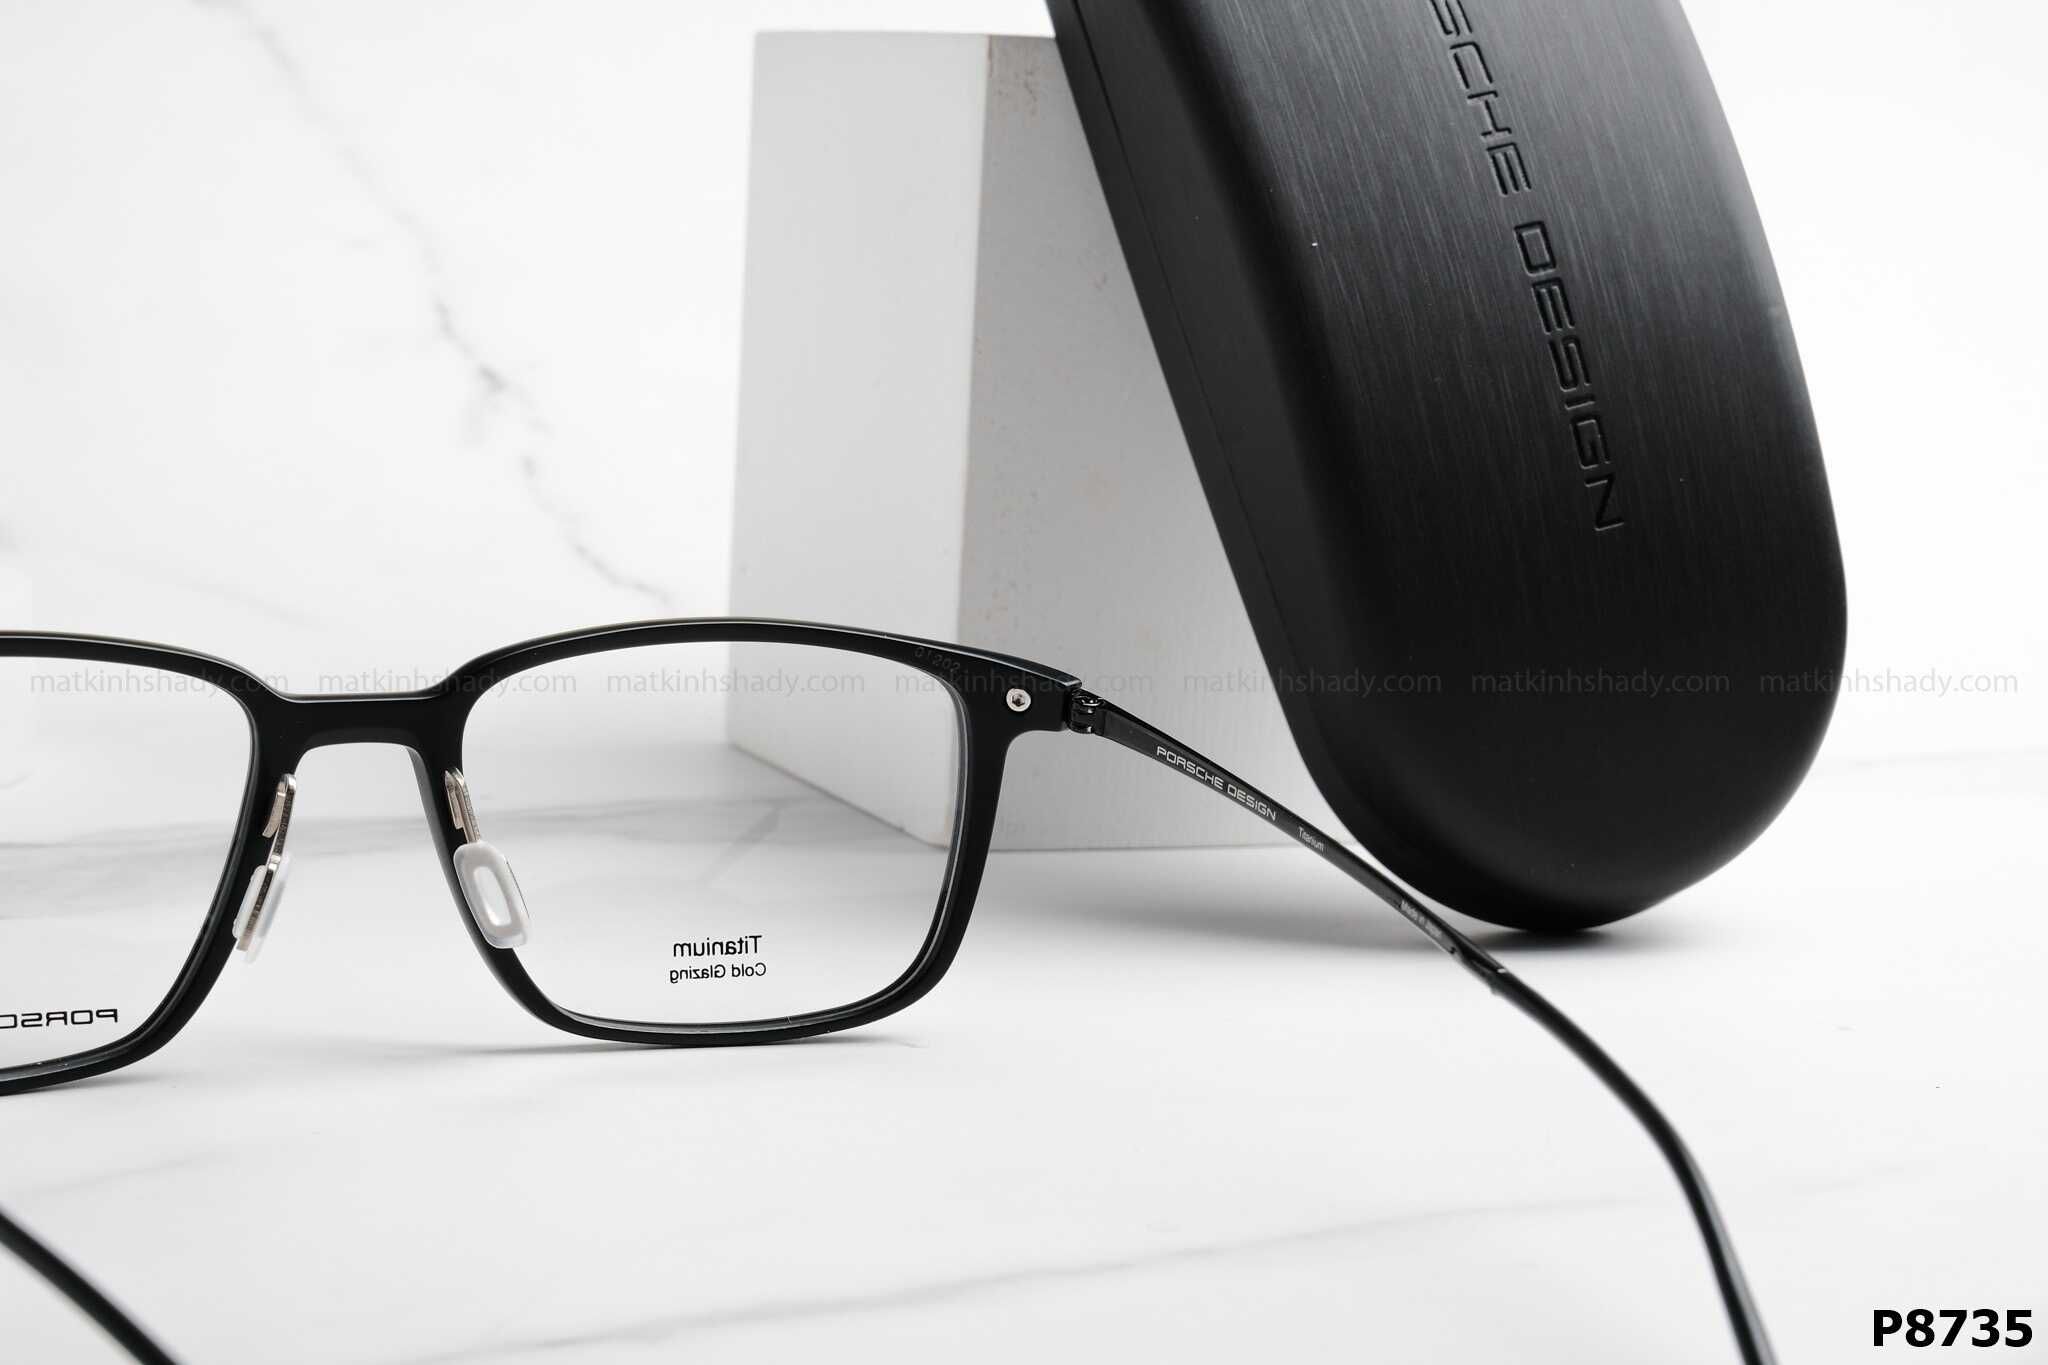  Porsche Design Eyewear - Glasses - P8735 